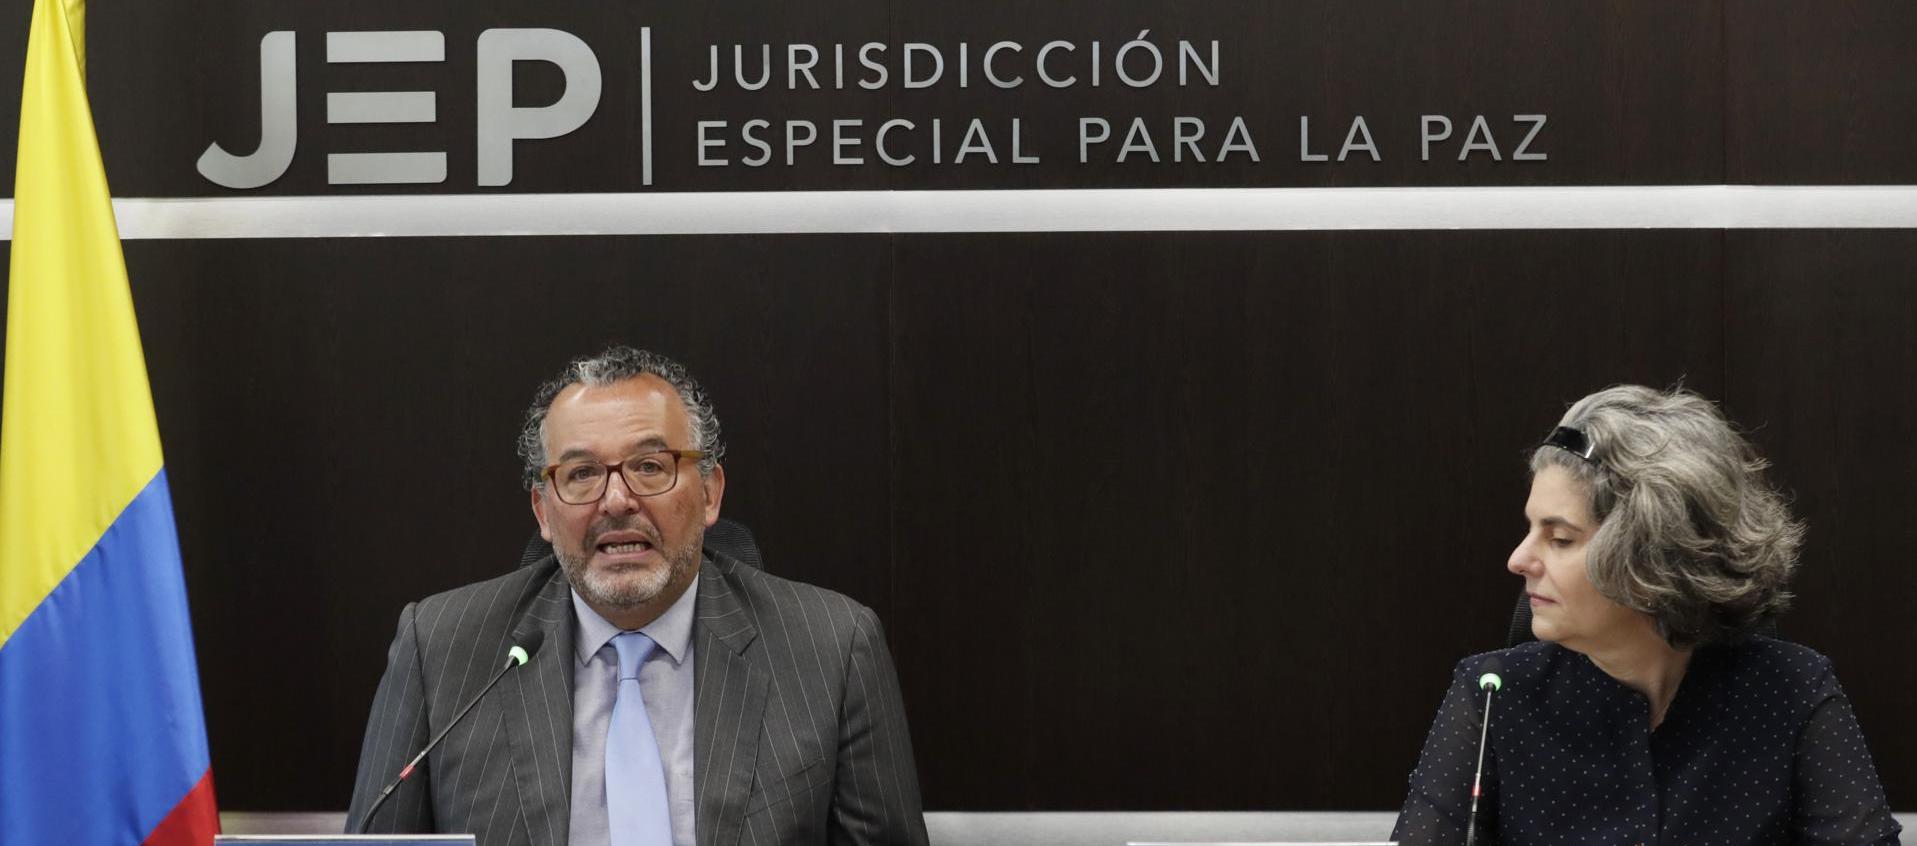 El presidente de la Jurisdicción Especial para la Paz (JEP), magistrado Roberto Carlos Vidal, junto a la magistrada de la JEP, Julieta Lemaitre.